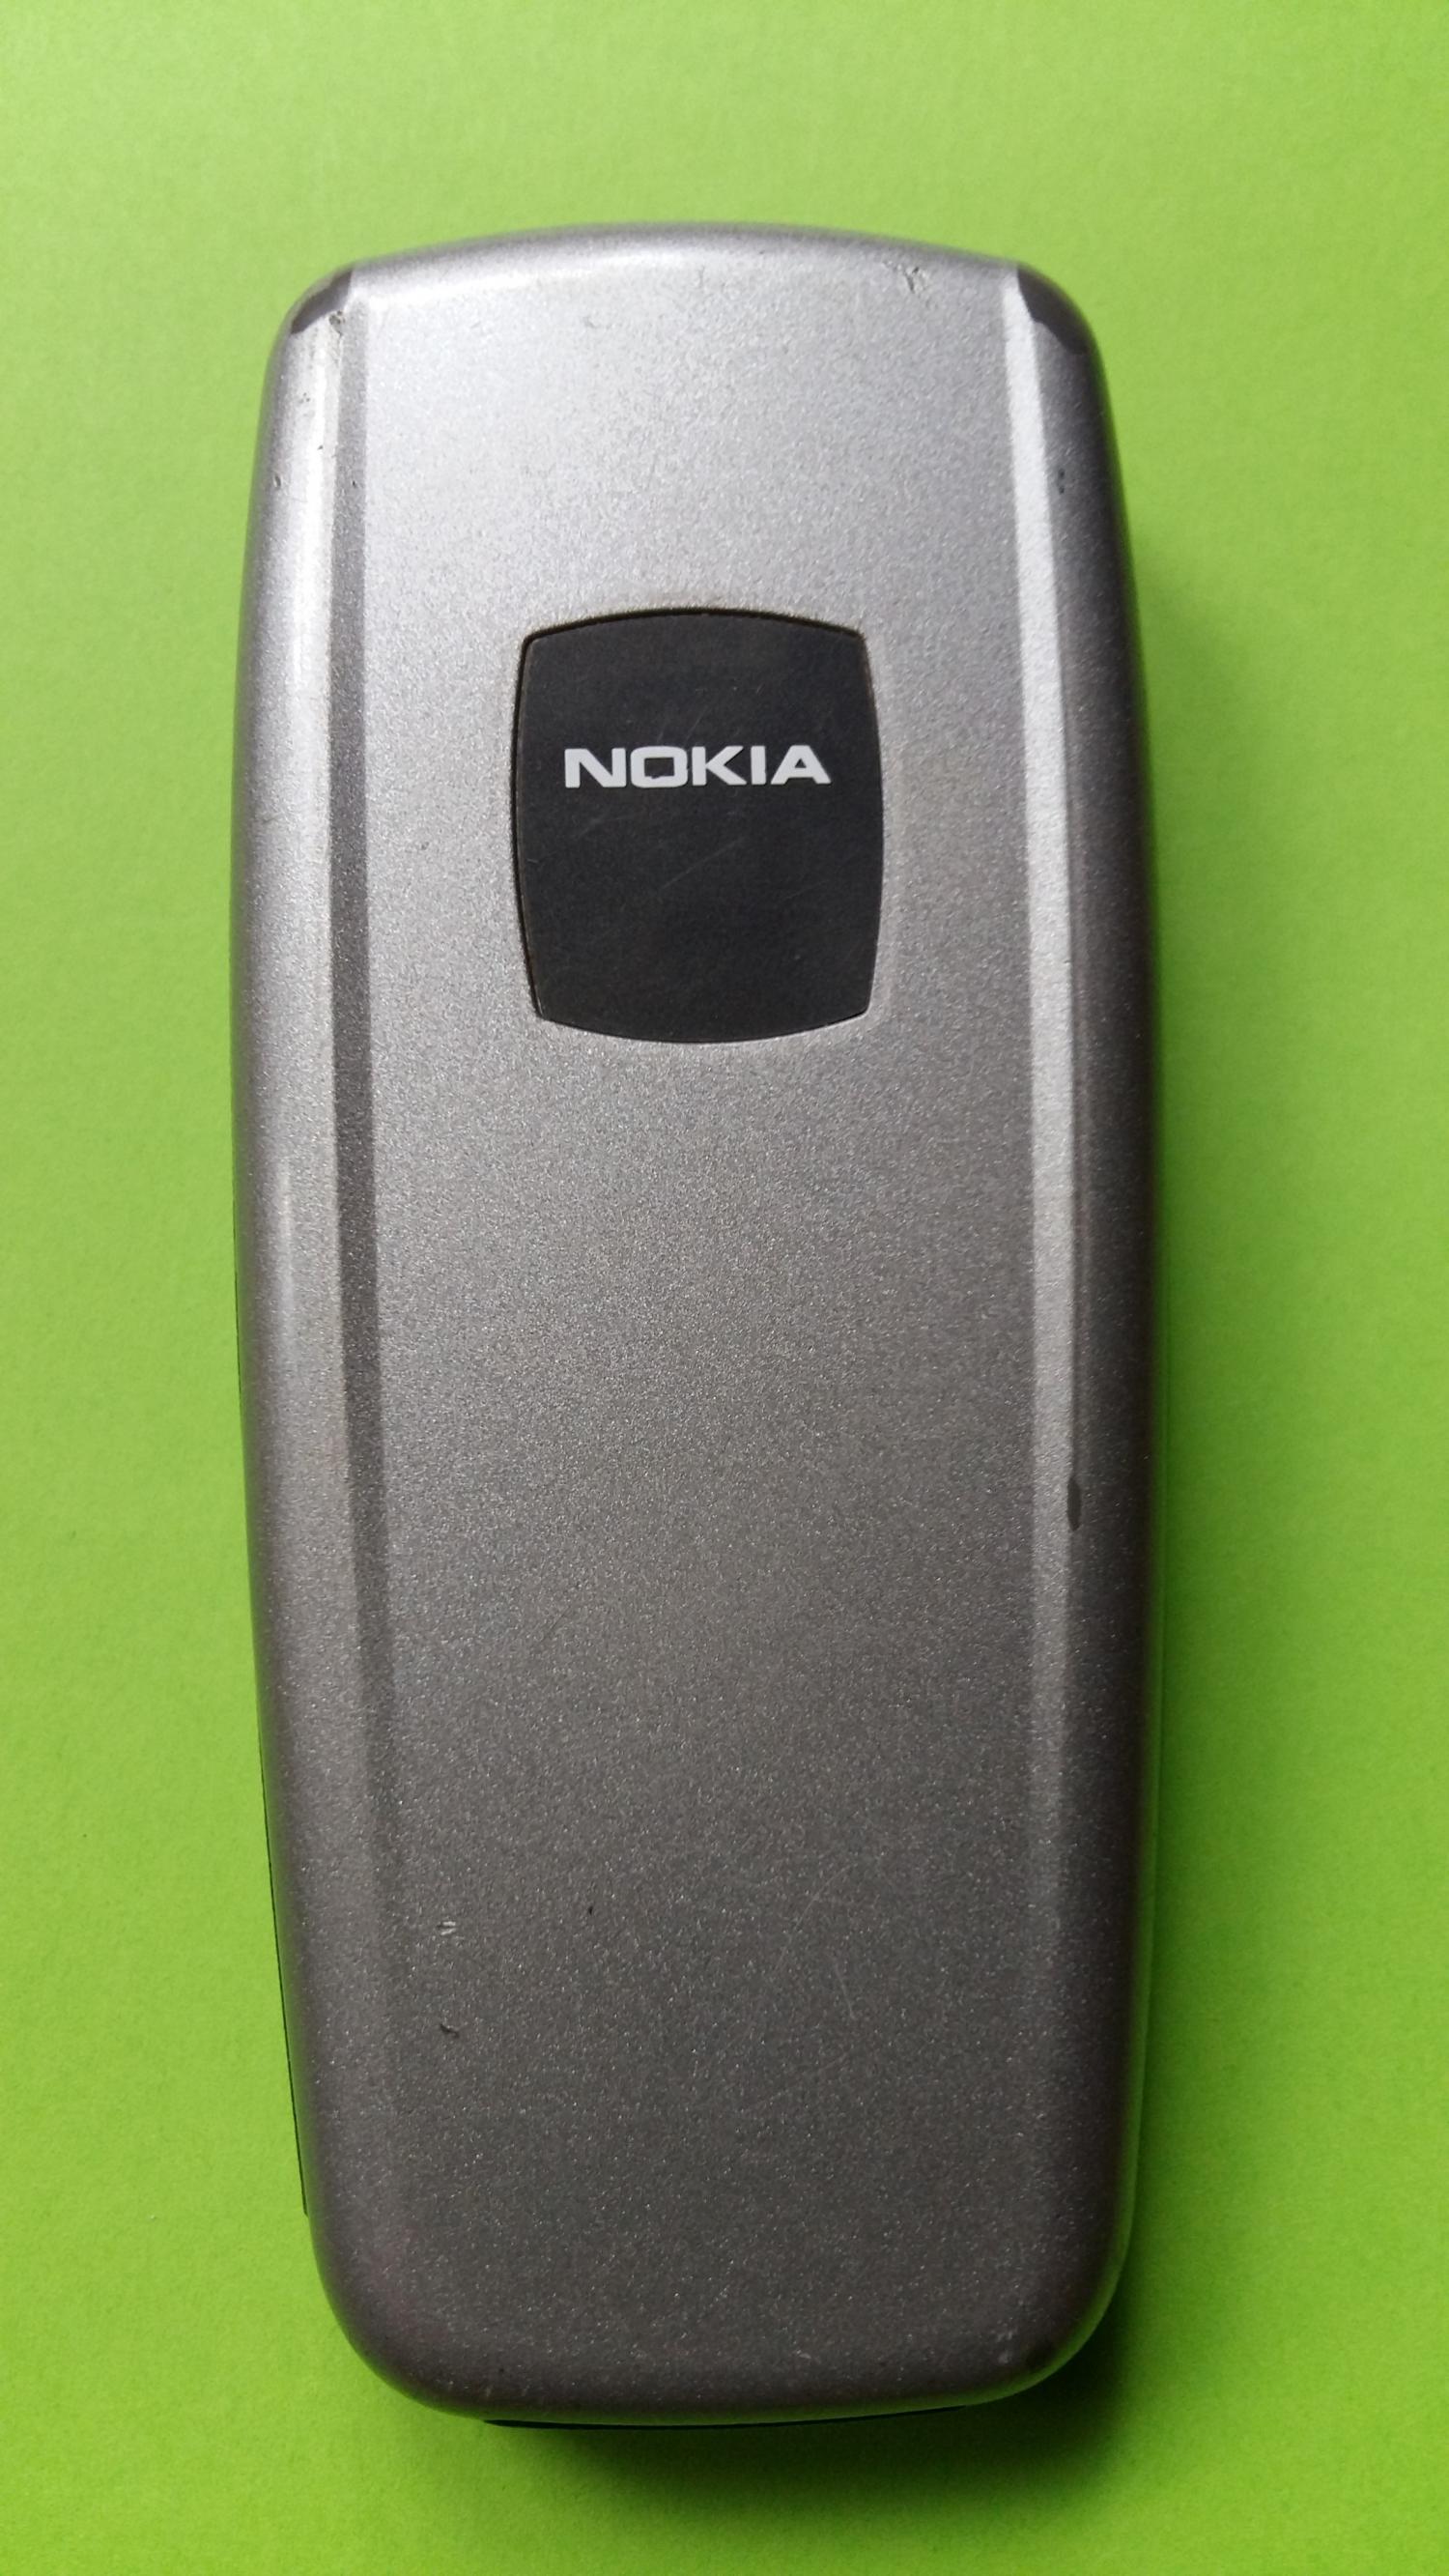 image-7330043-Nokia 2600 (4)2.jpg